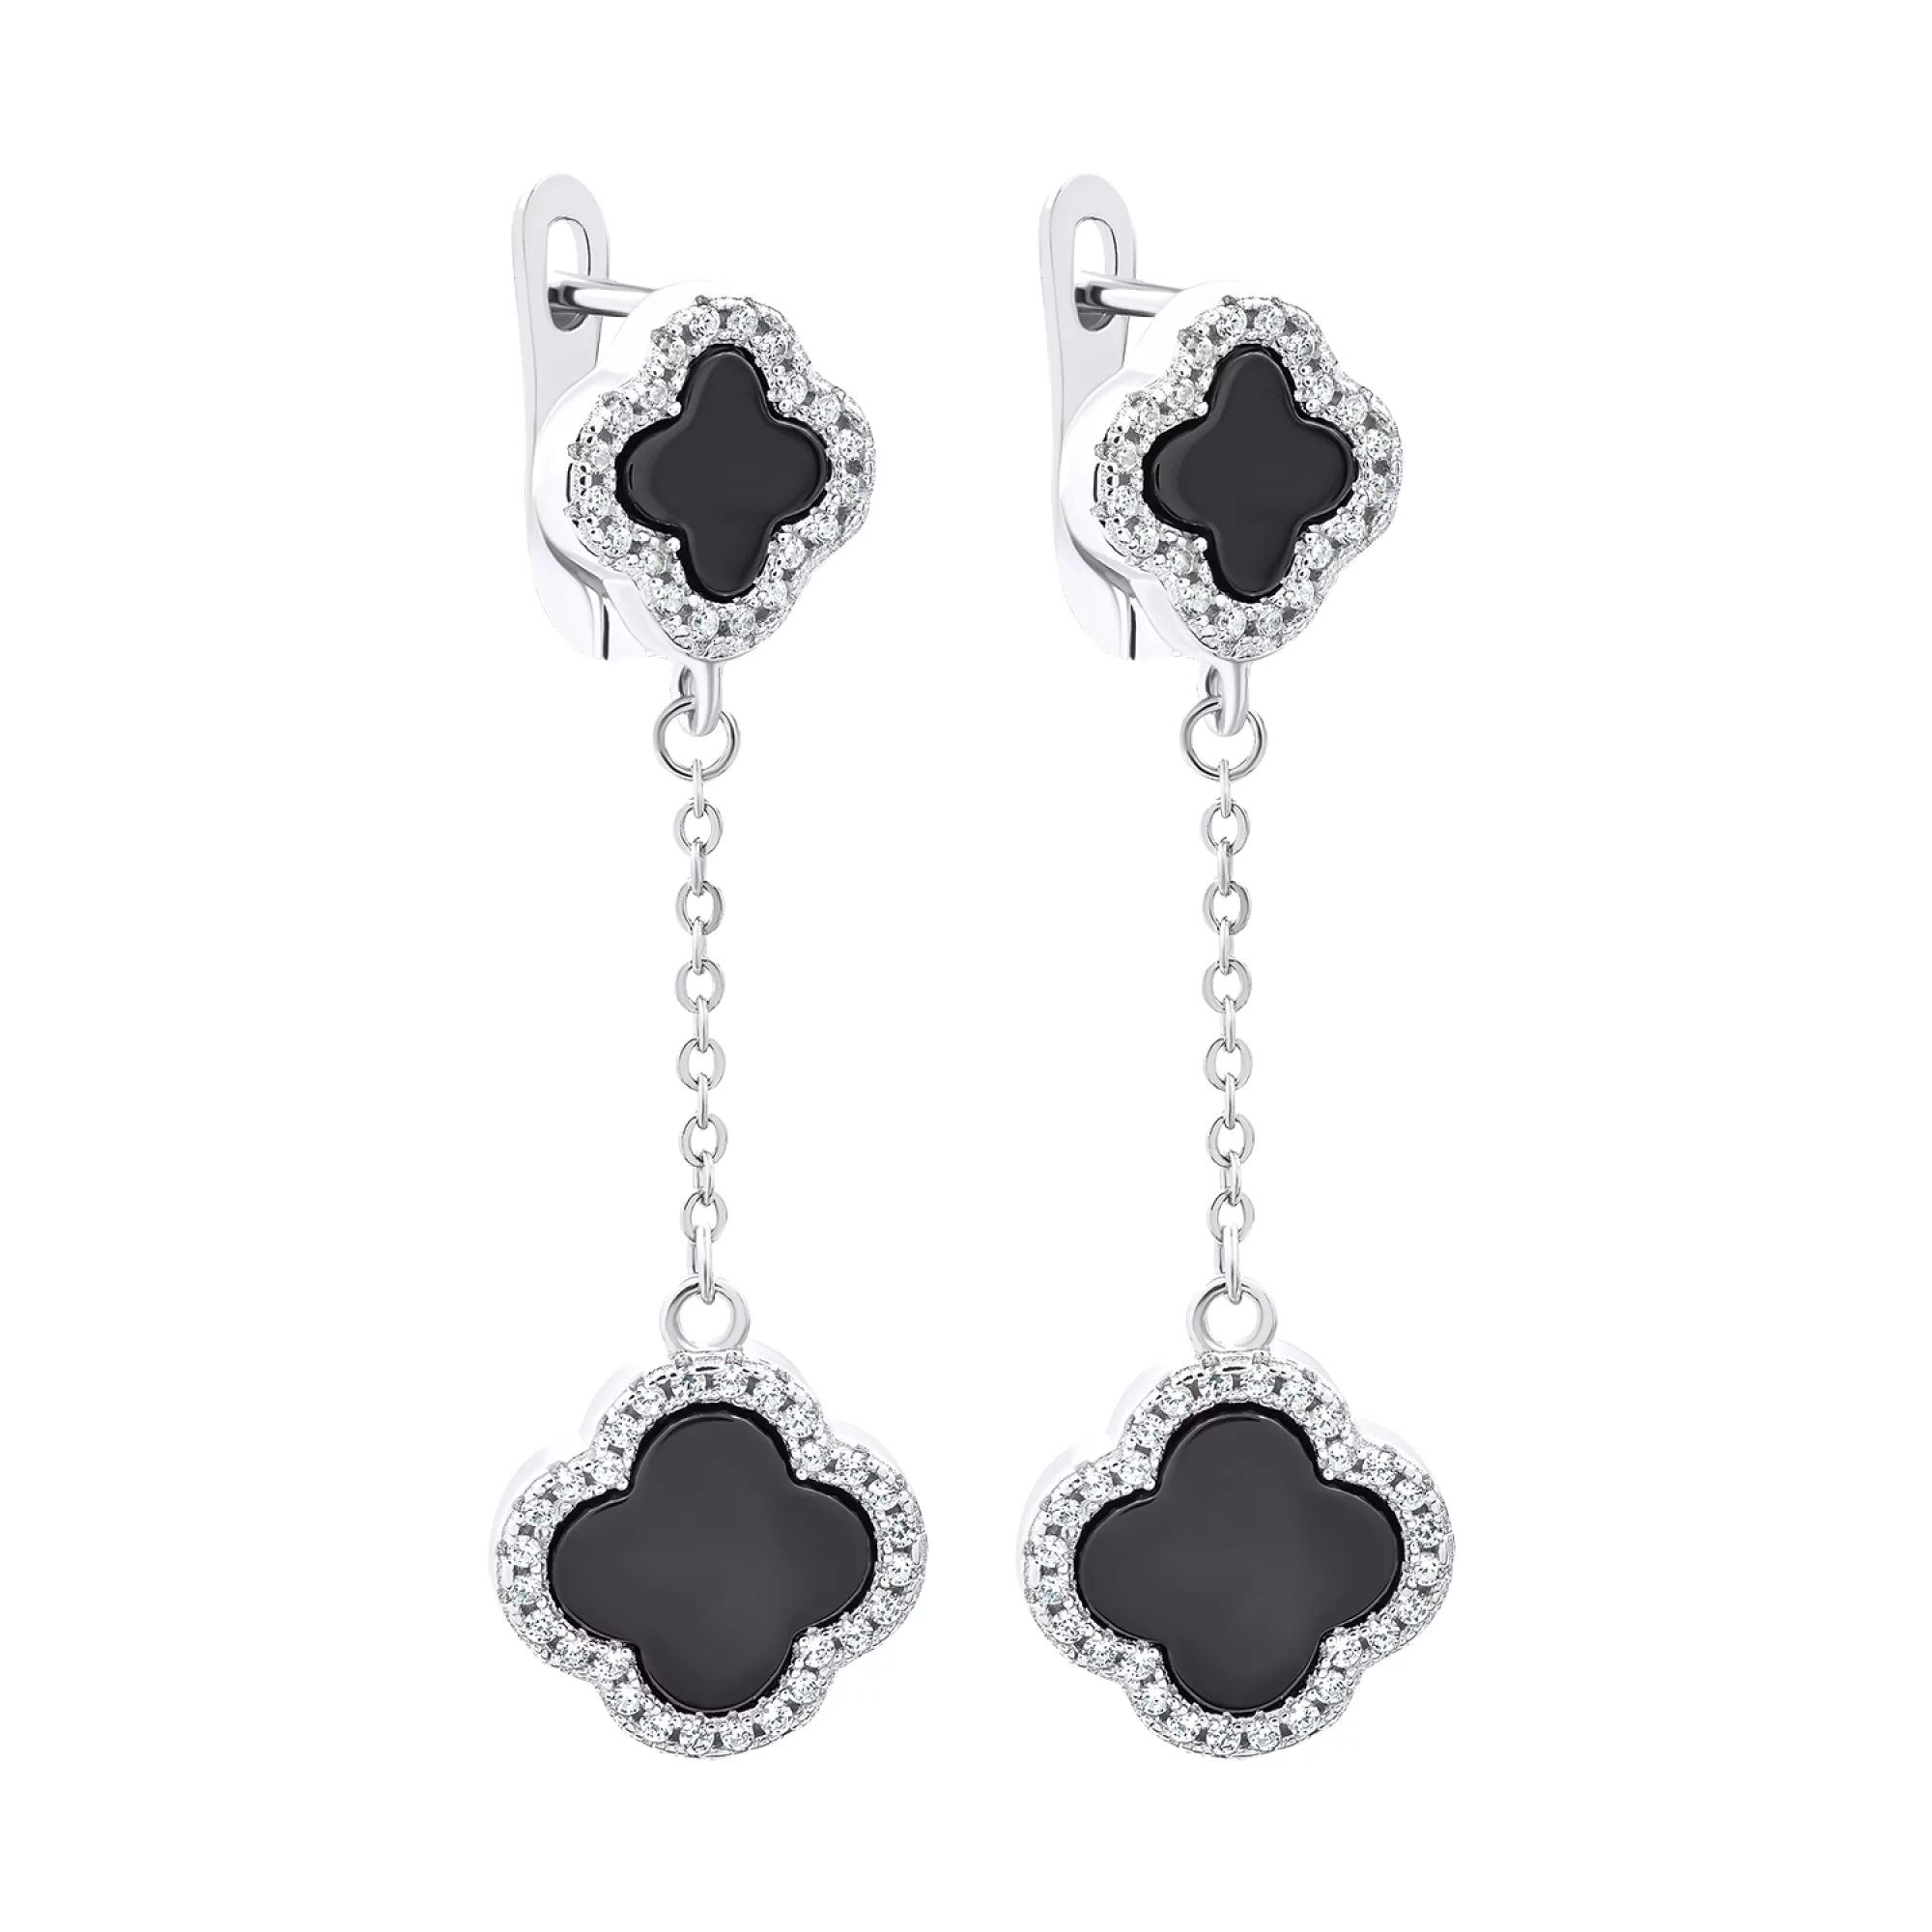 Срібні сережки з підвісками конюшина з оніксом та фіанітами - 1520595 – зображення 1